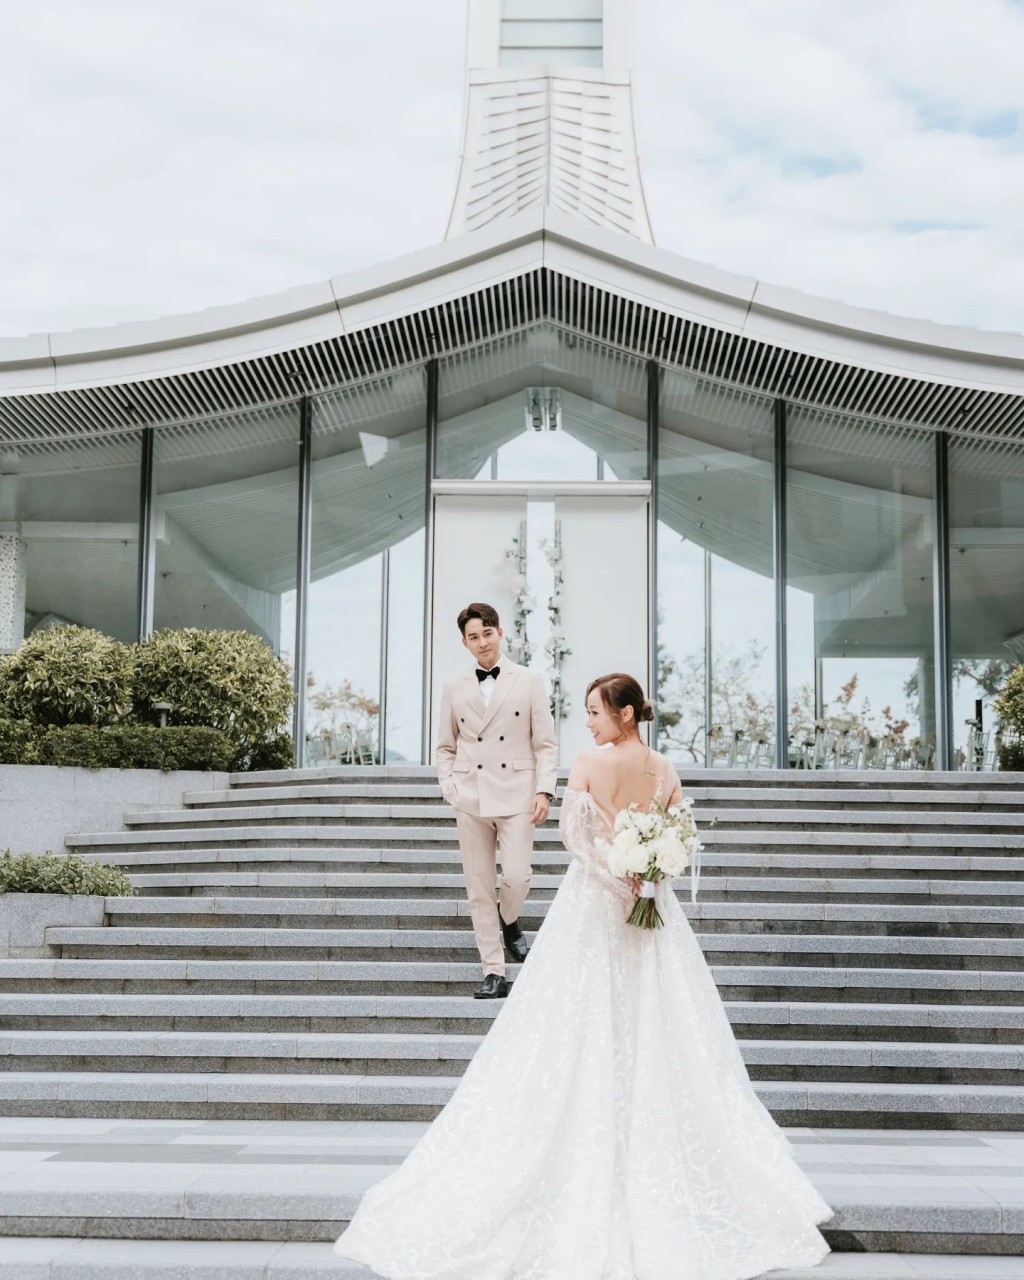 黄美棋锺健威结婚于4月6日举行婚礼。